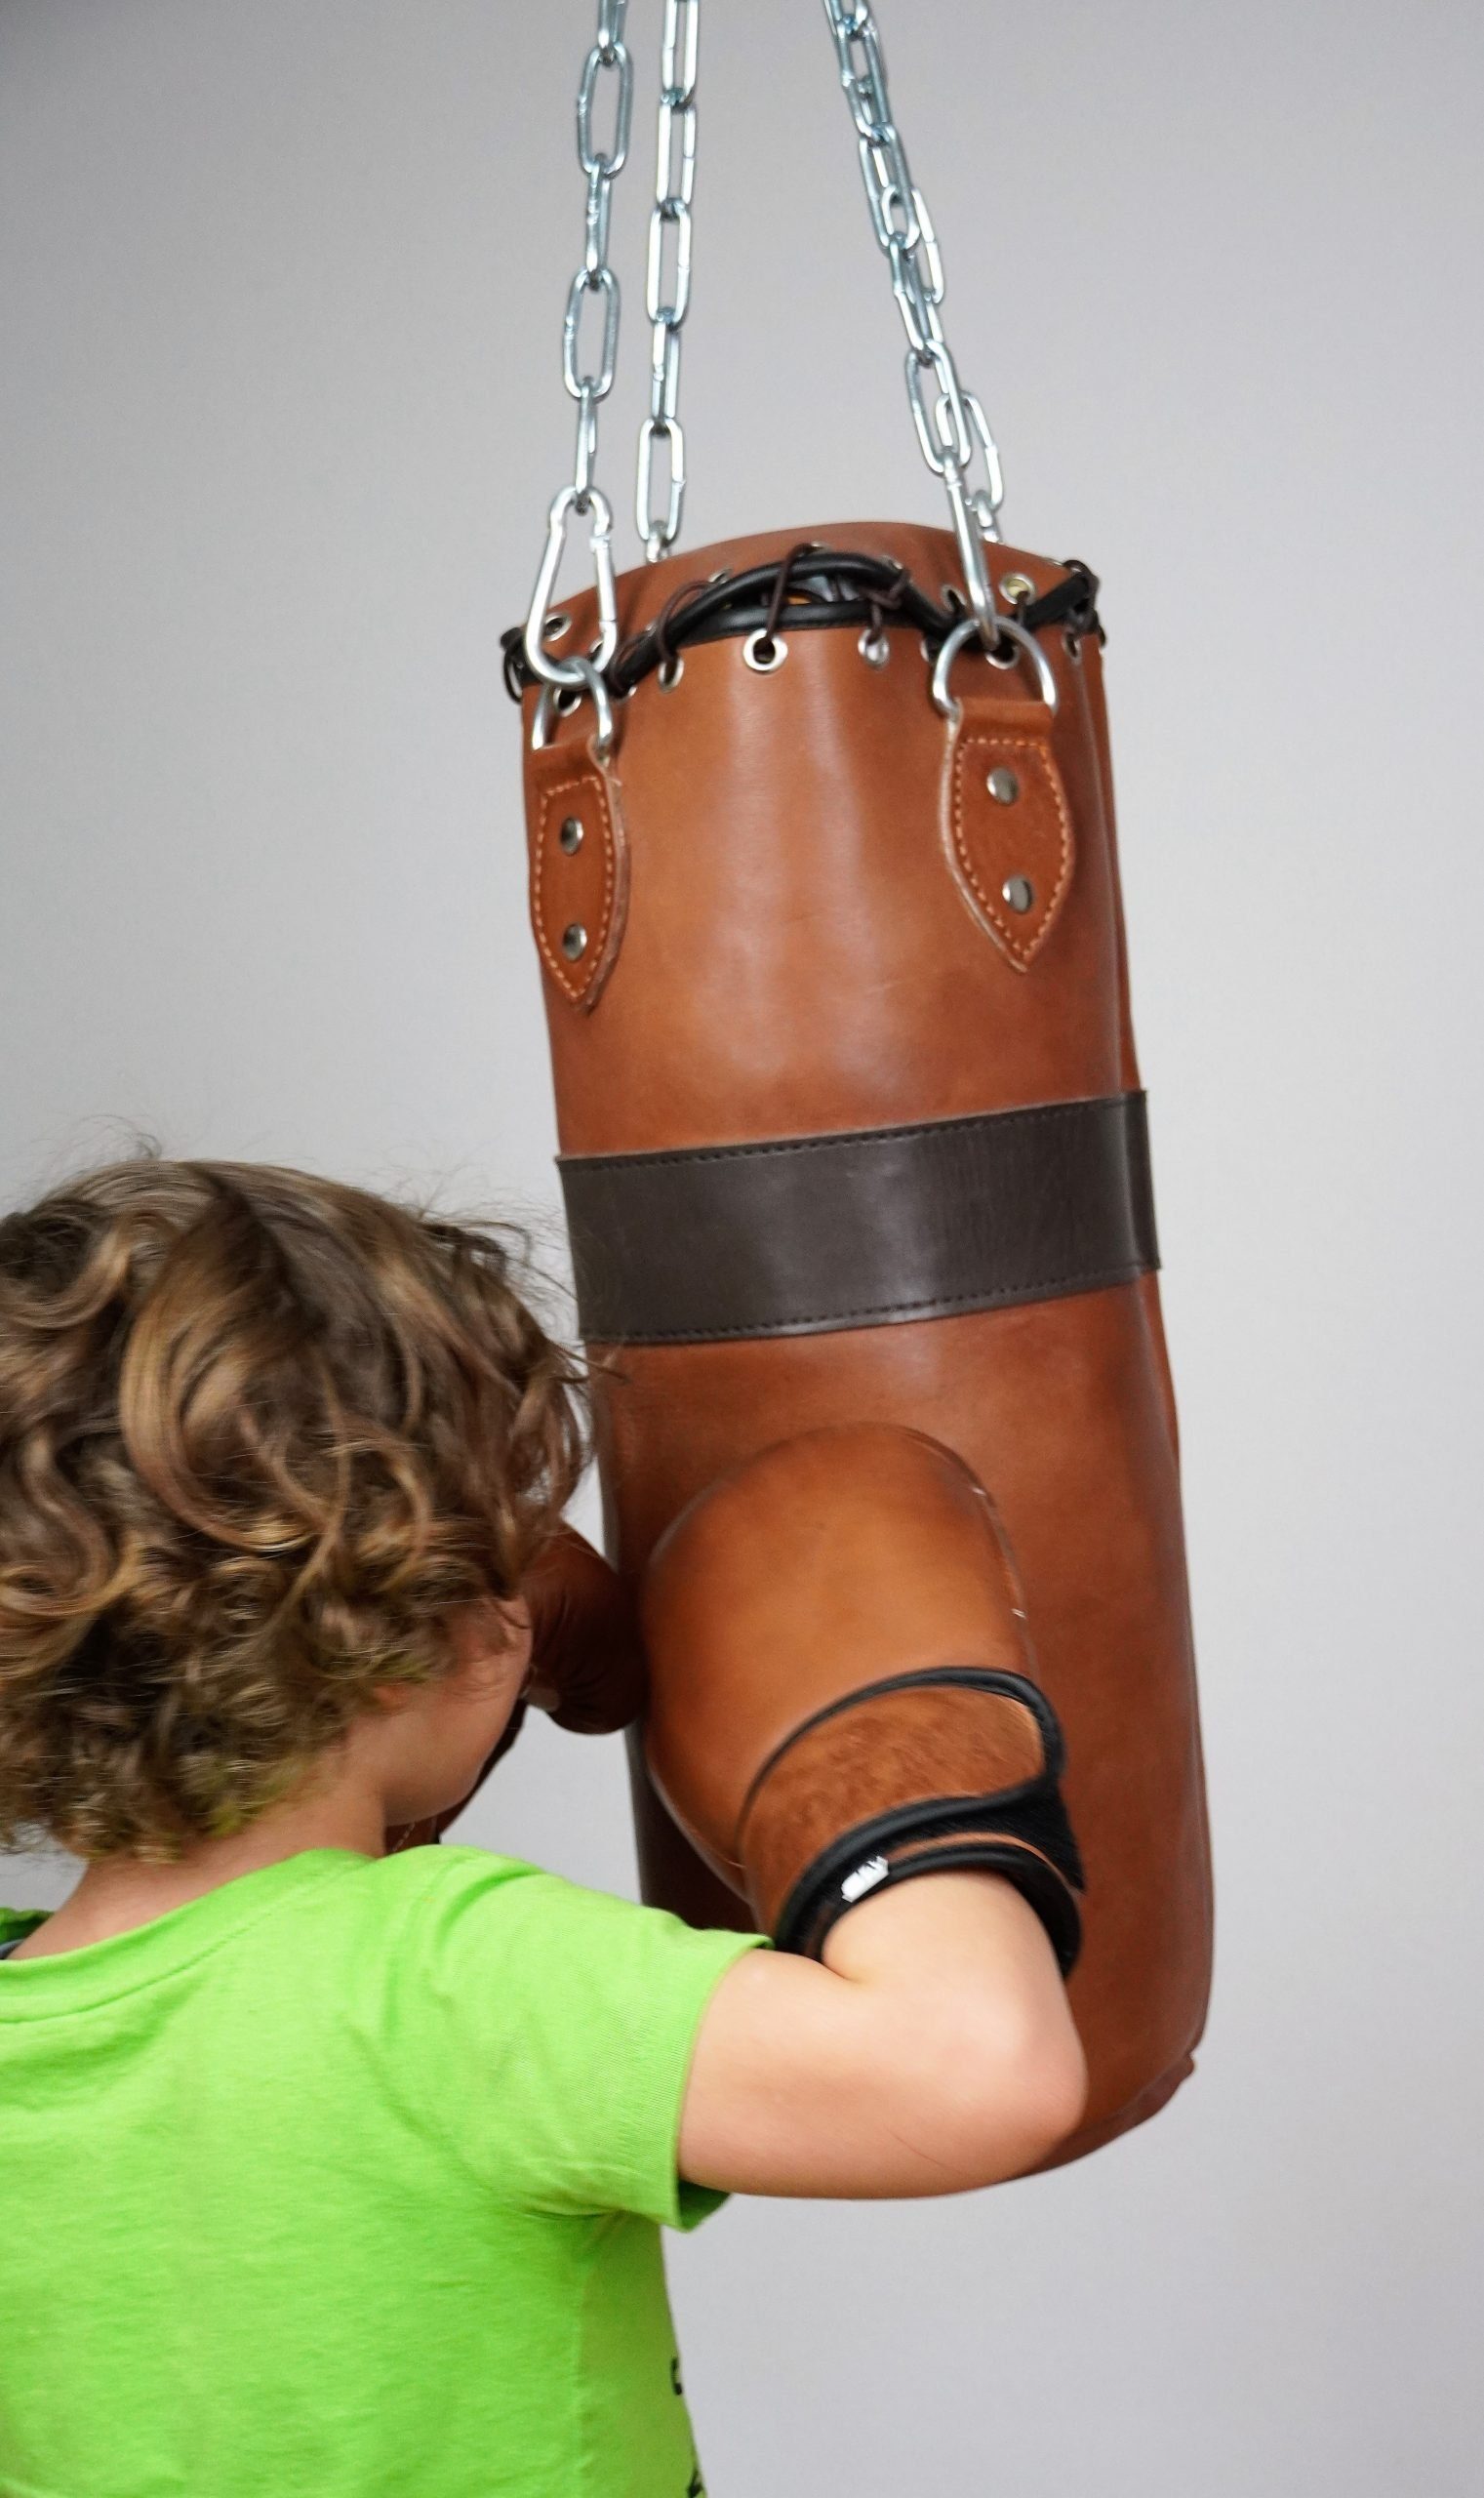 großer Rabatt Forma Fisico Kinderboxhandschuhe oz, Stabilisierung 4 Handgelenks Premium Fisico sichere des Forma BG